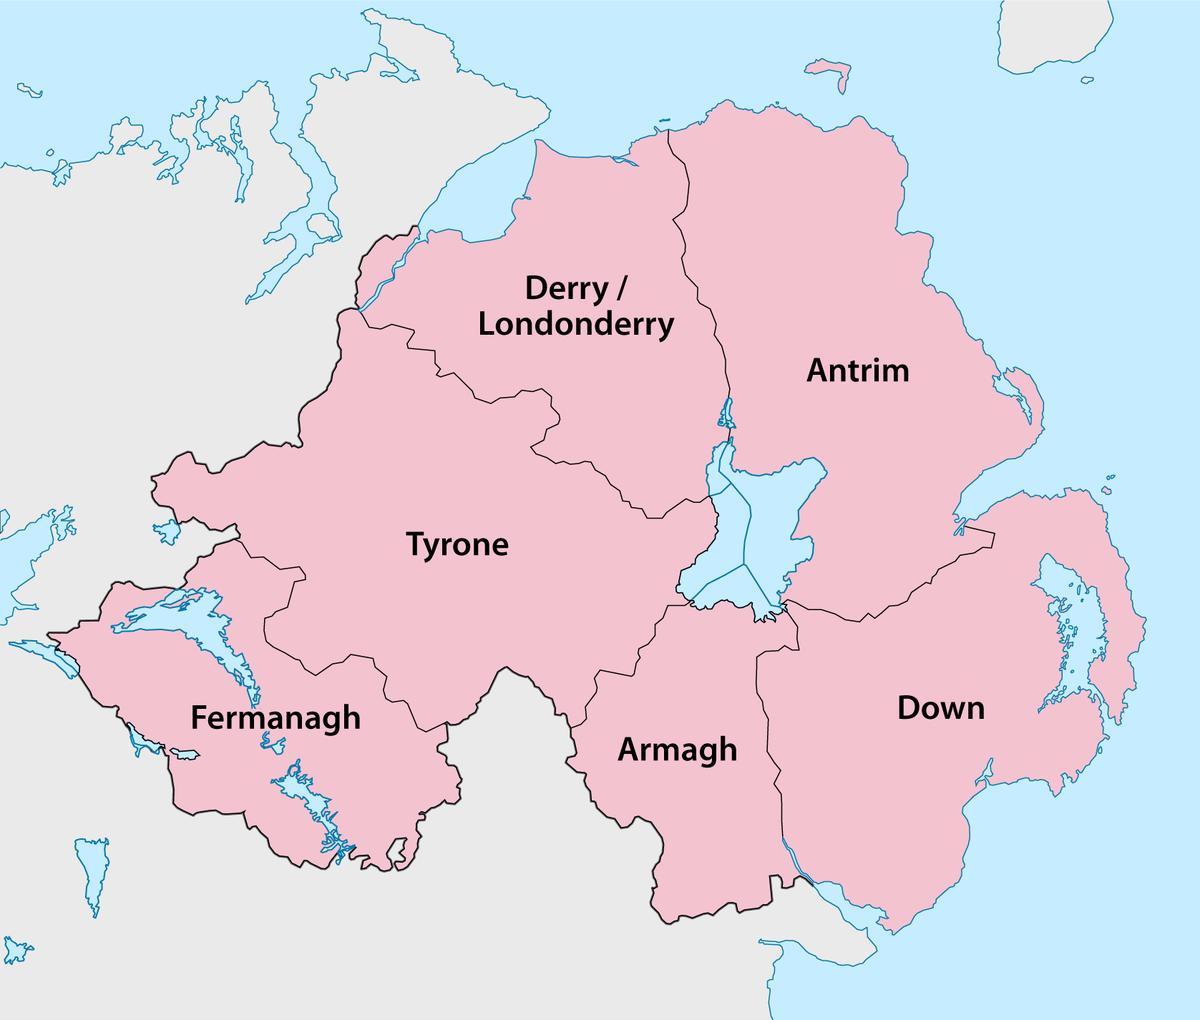 خريطة ايرلندا الشمالية المقاطعات والبلدات